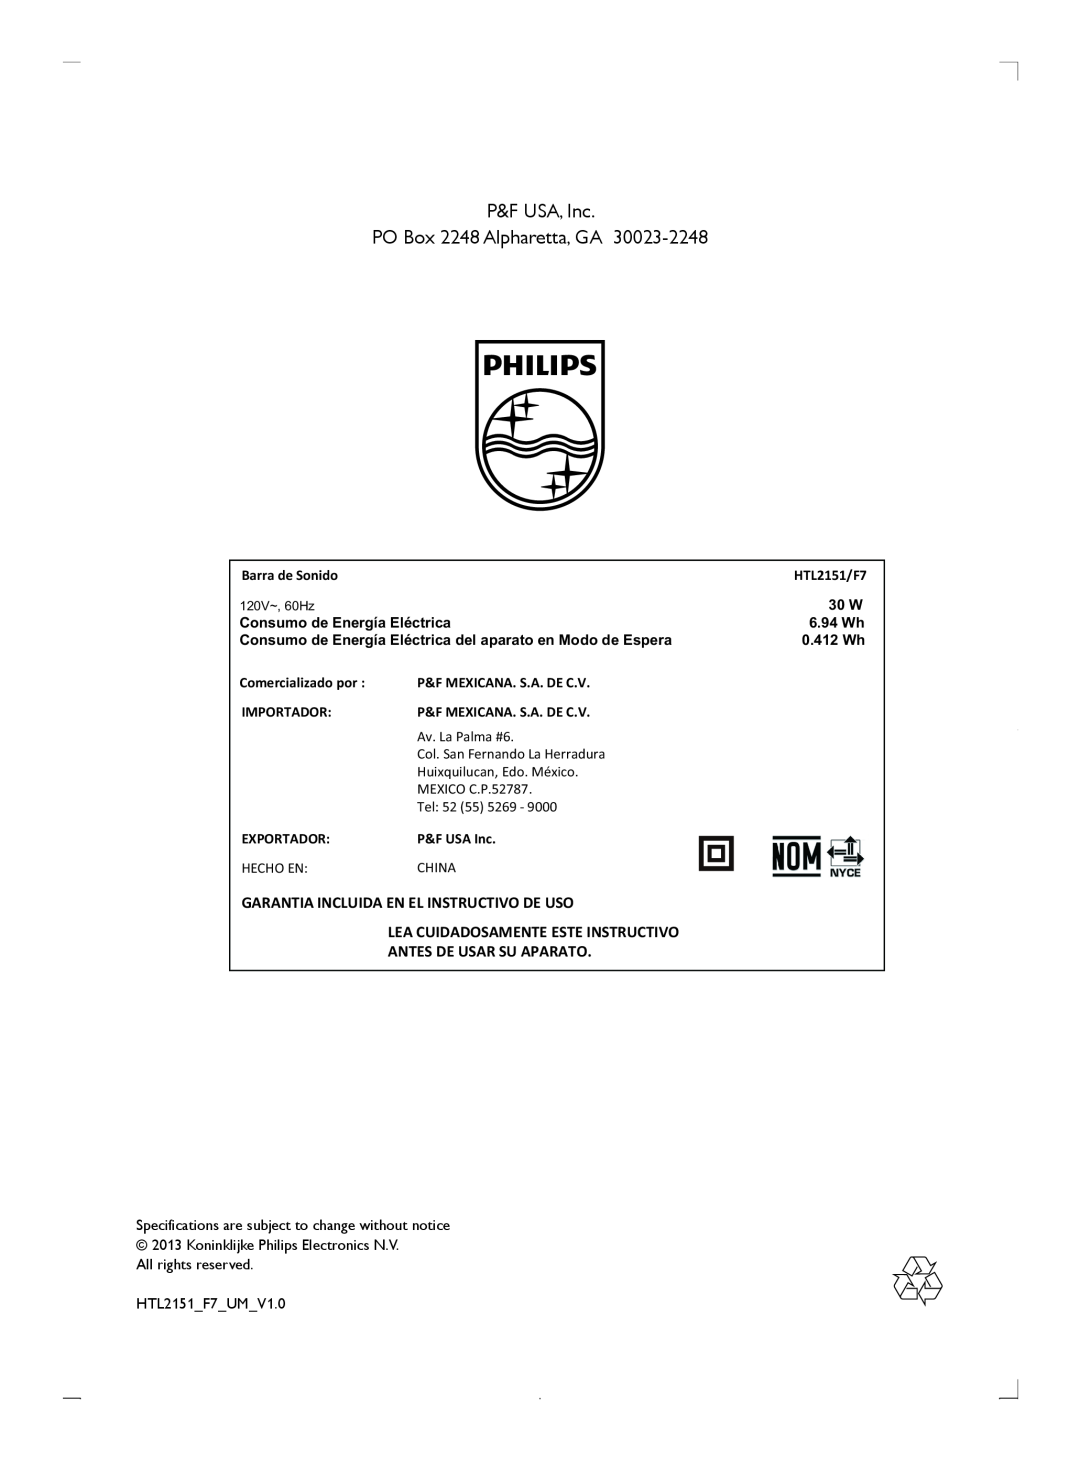 Philips HTL2151F7 Garantia Incluida En El Instructivo De Uso, Lea Cuidadosamente Este Instructivo, 30 W, 6.94 Wh, 0.412 Wh 